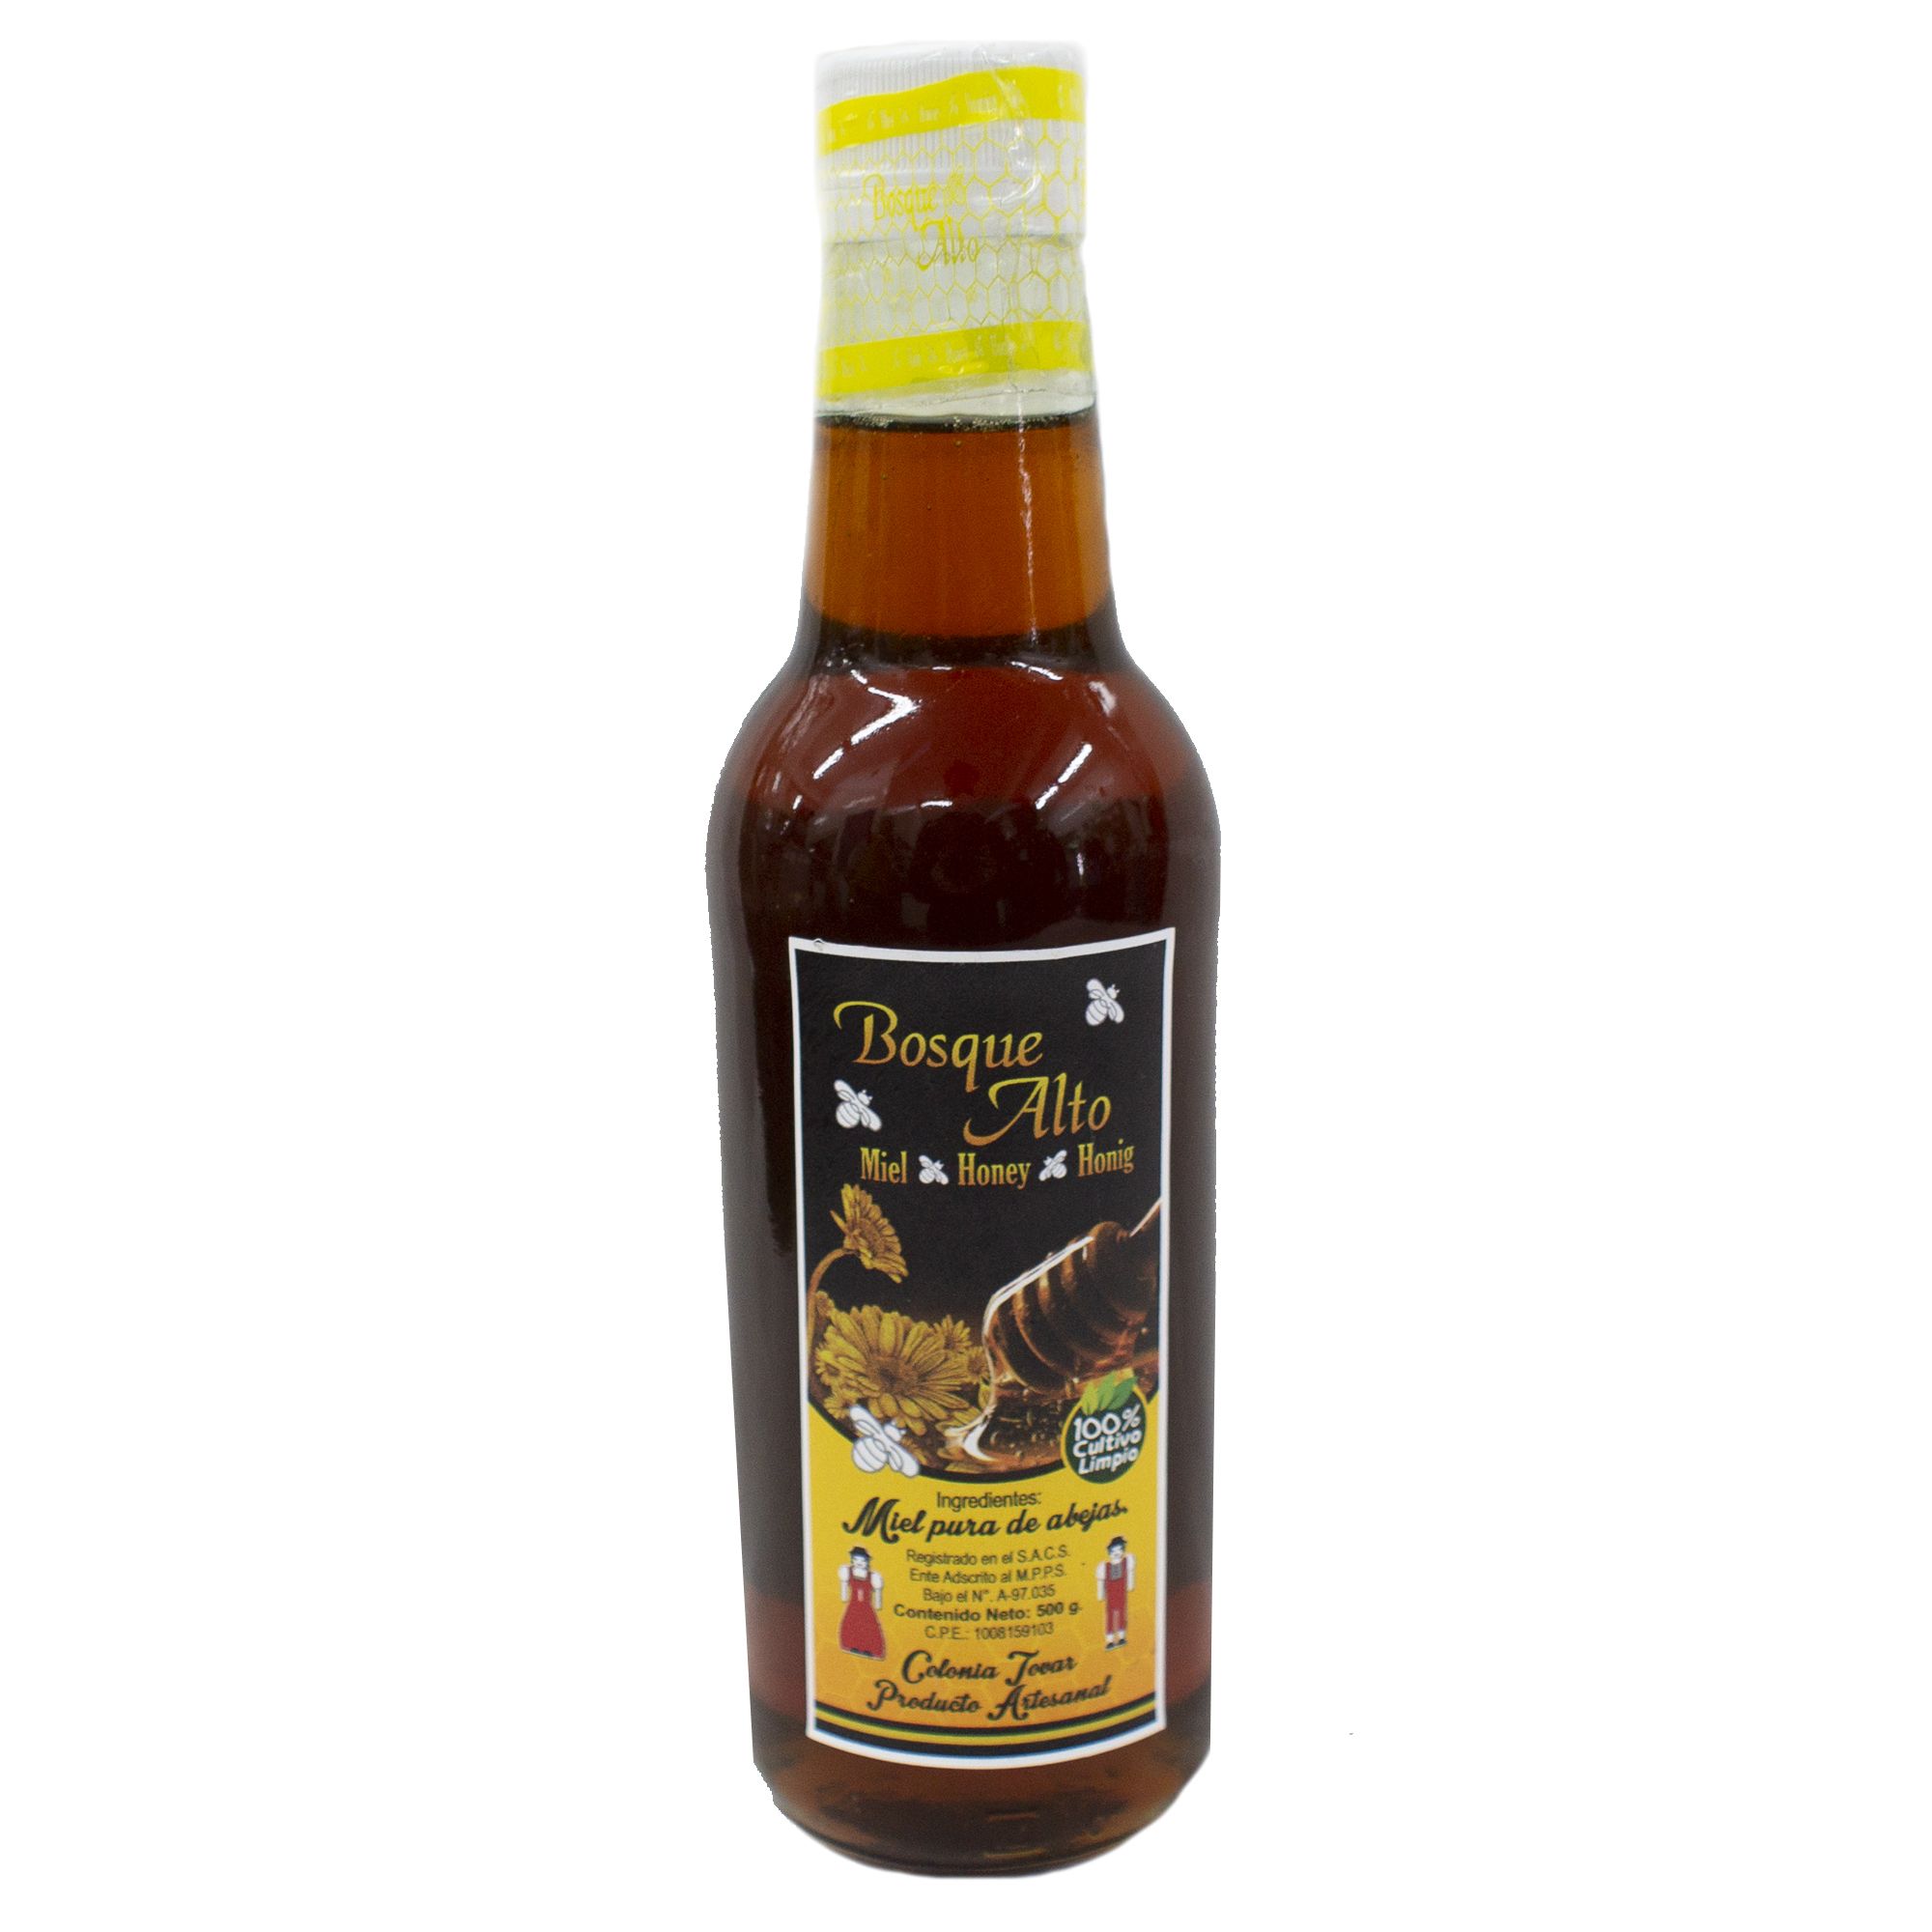 Miel pura de abeja del bosque Made In Earth (400 g) – Lakpura LLC